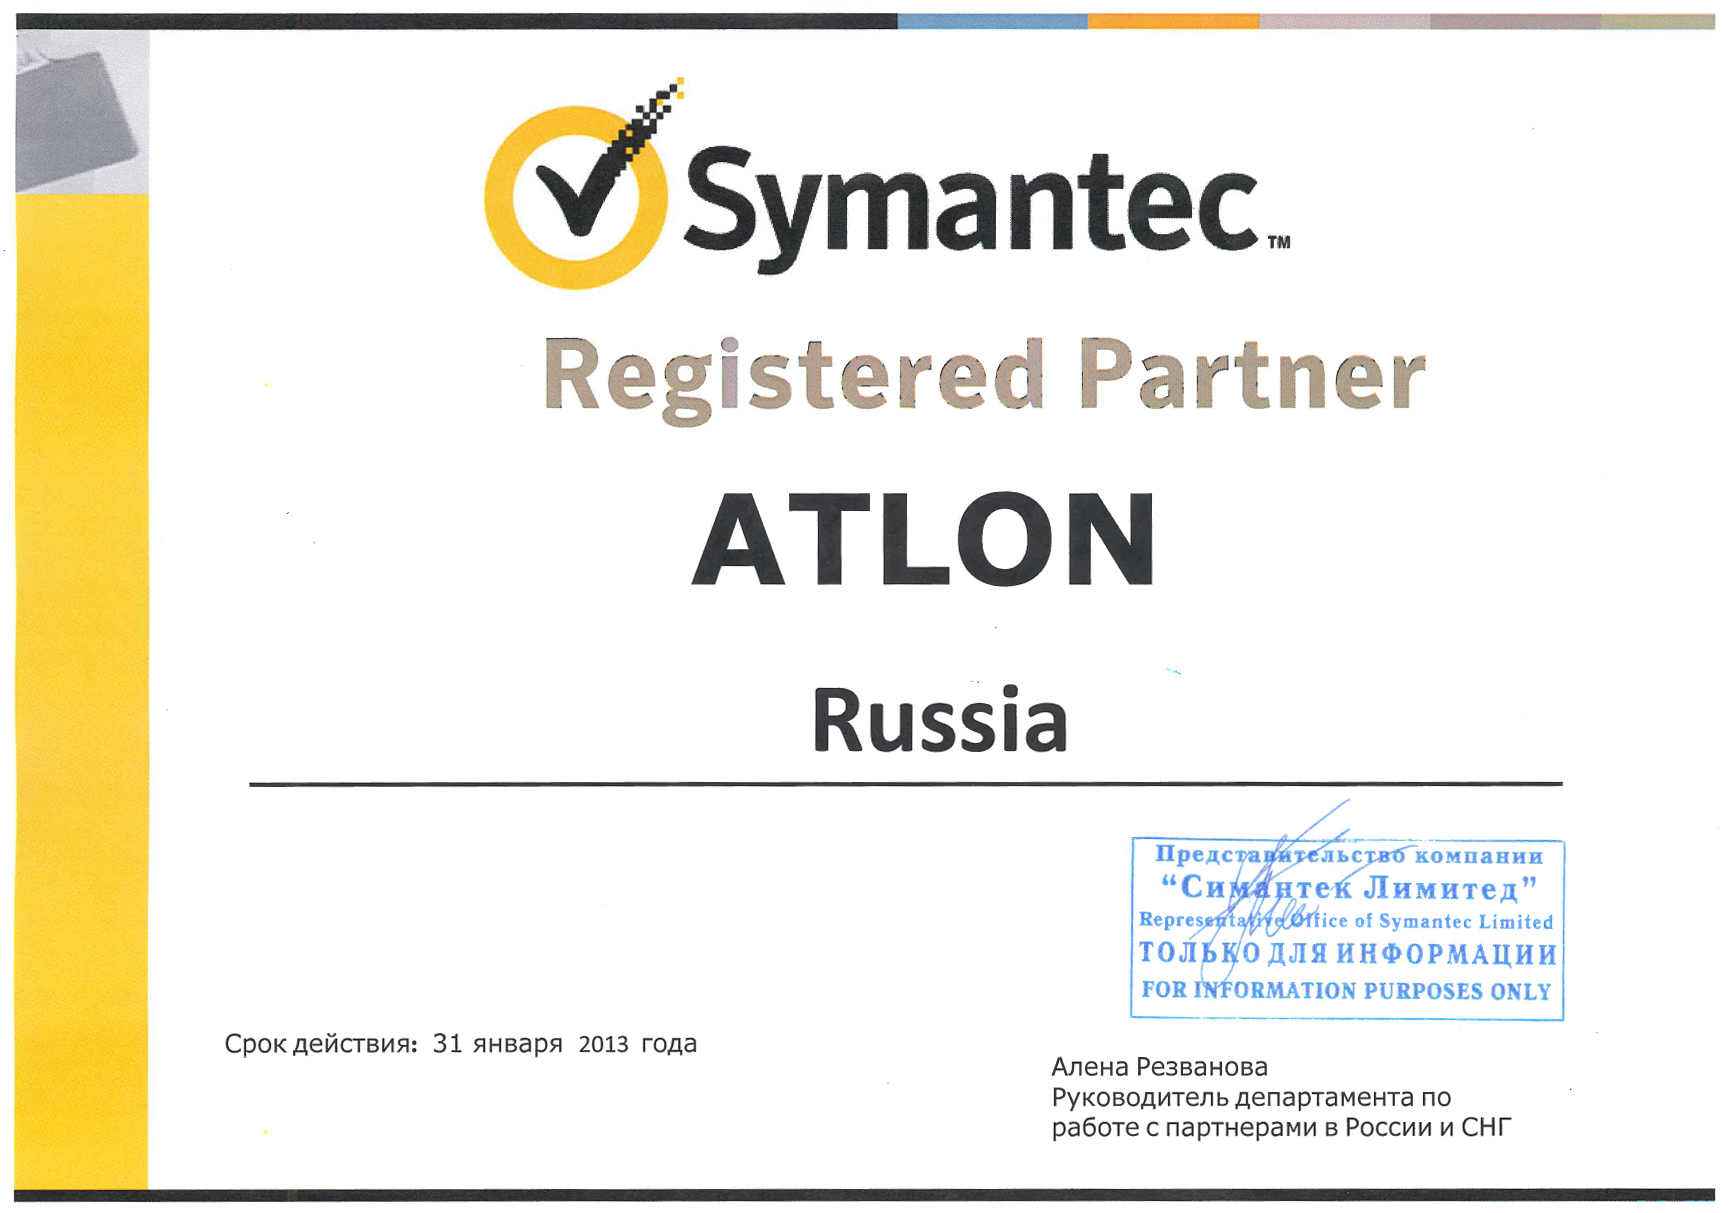 symantec2012_regist_partner.jpg